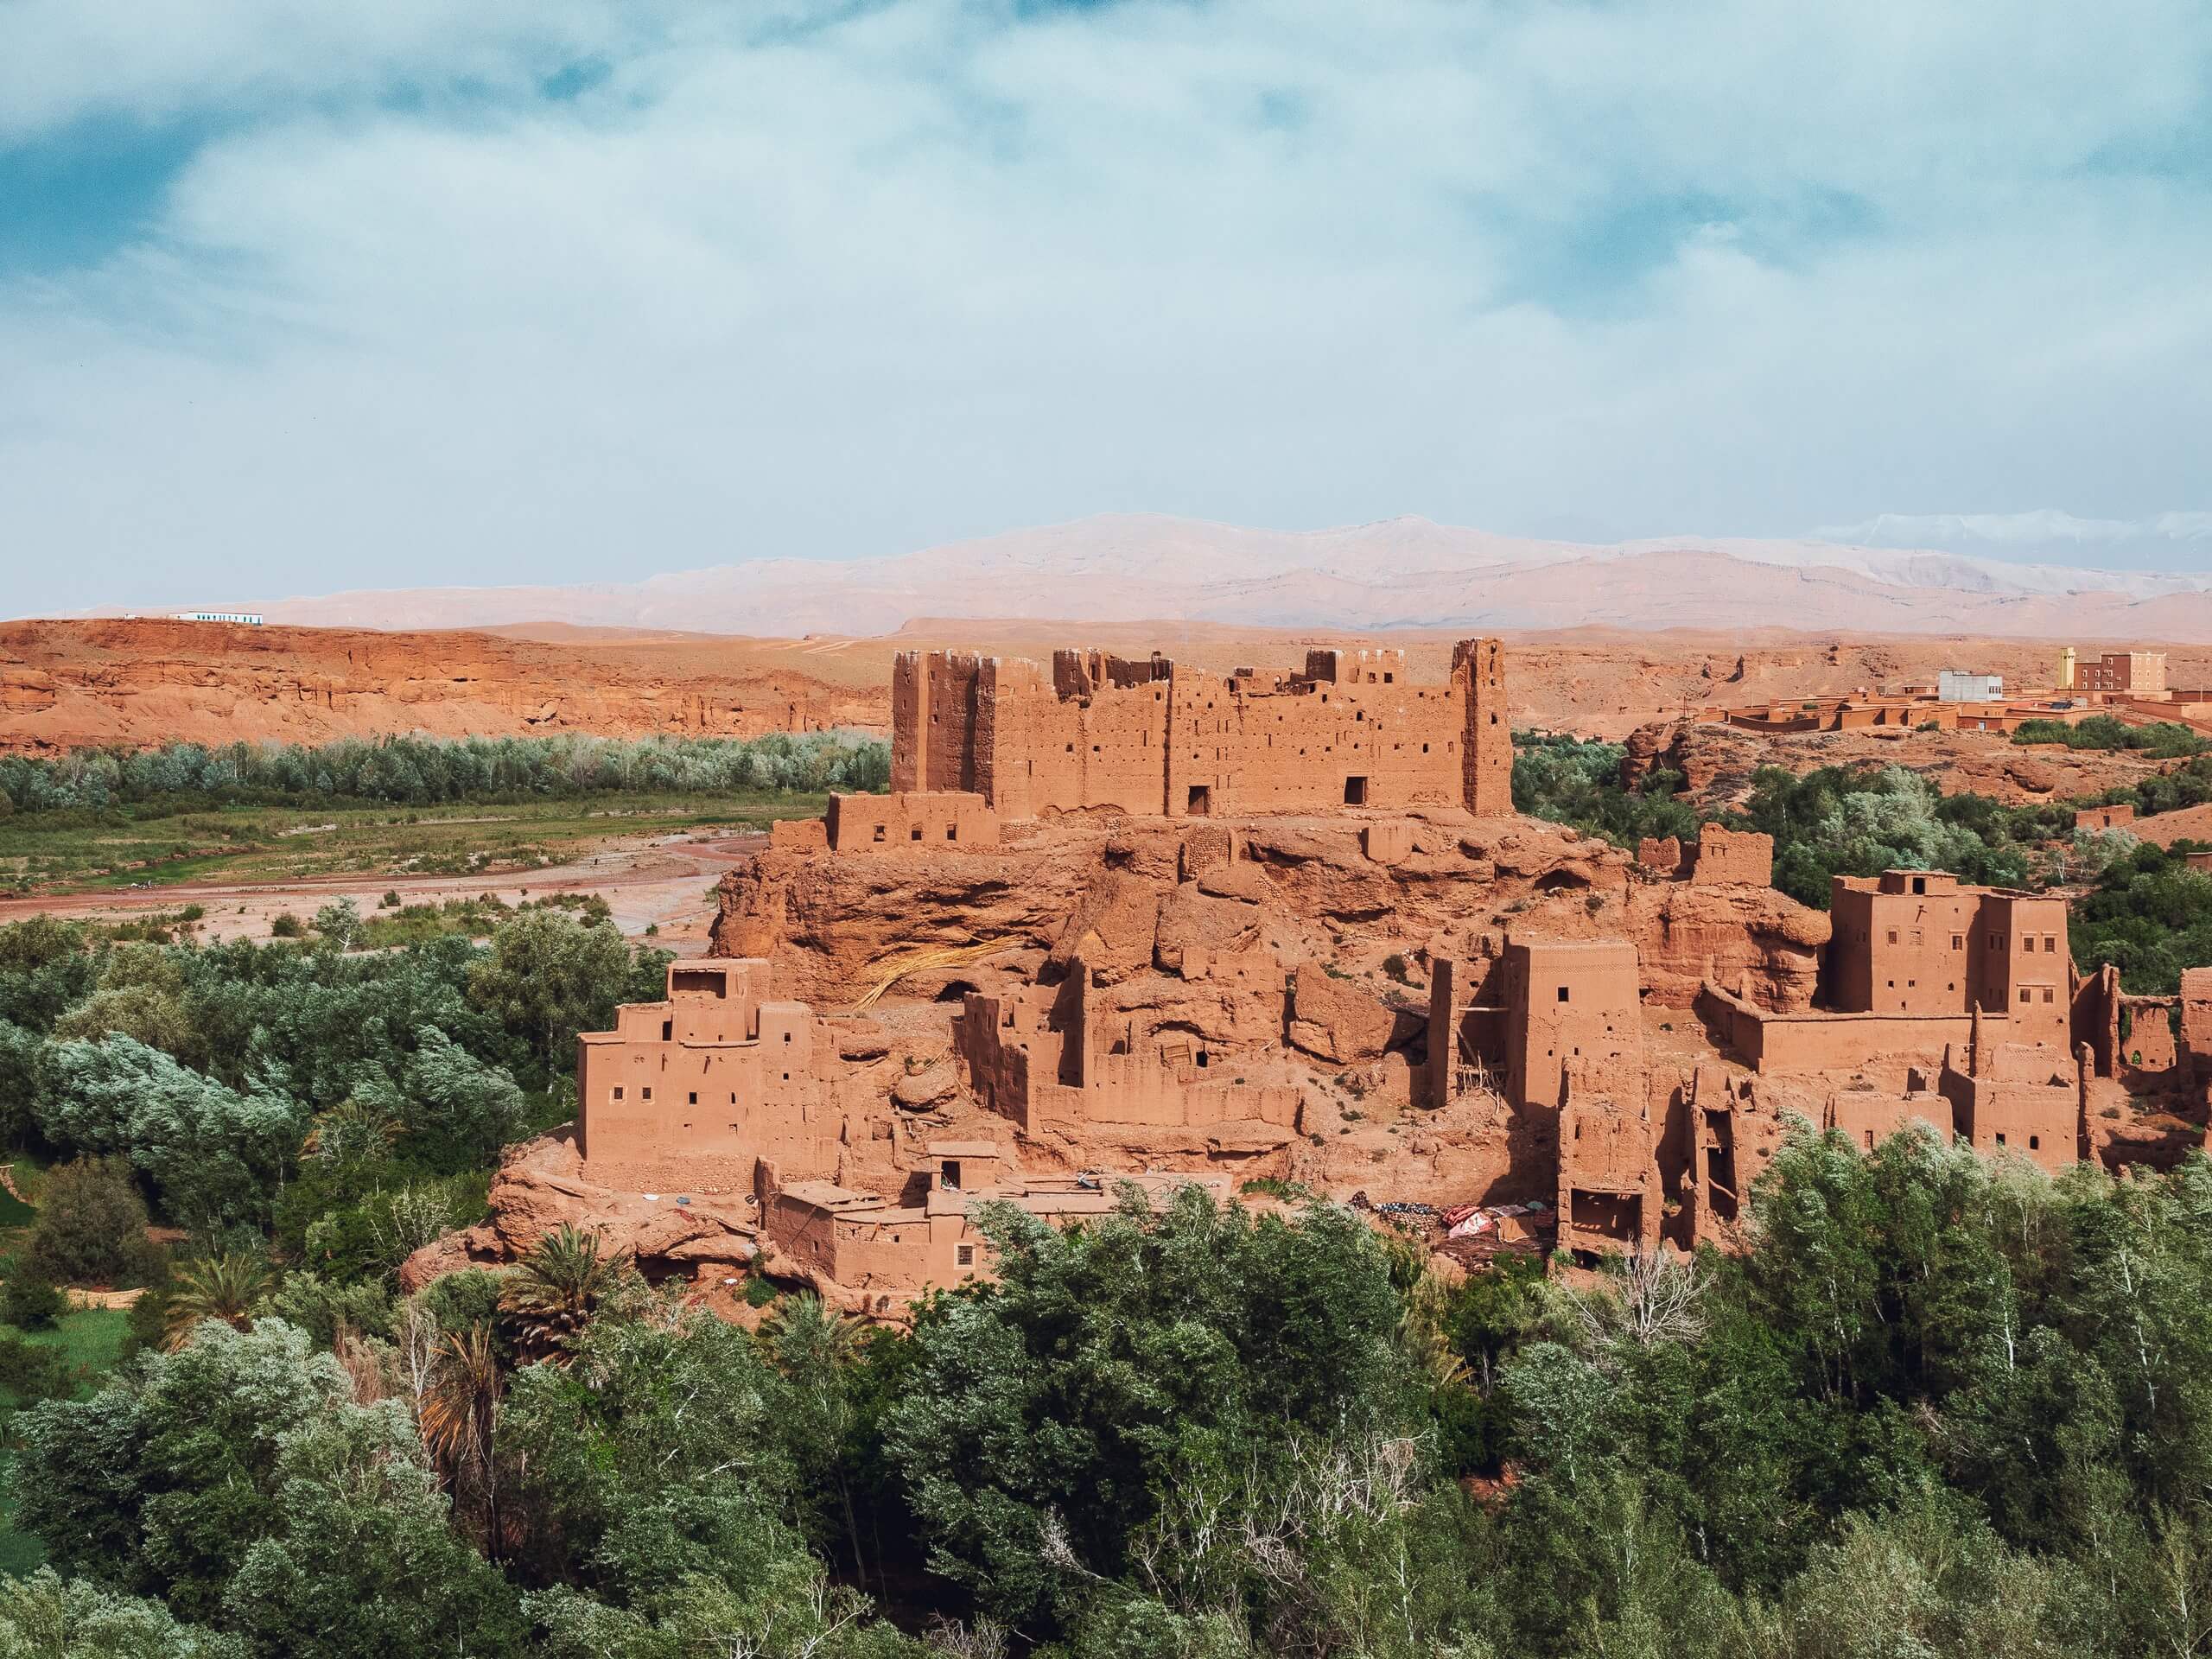 Authentic Moroccan architecture